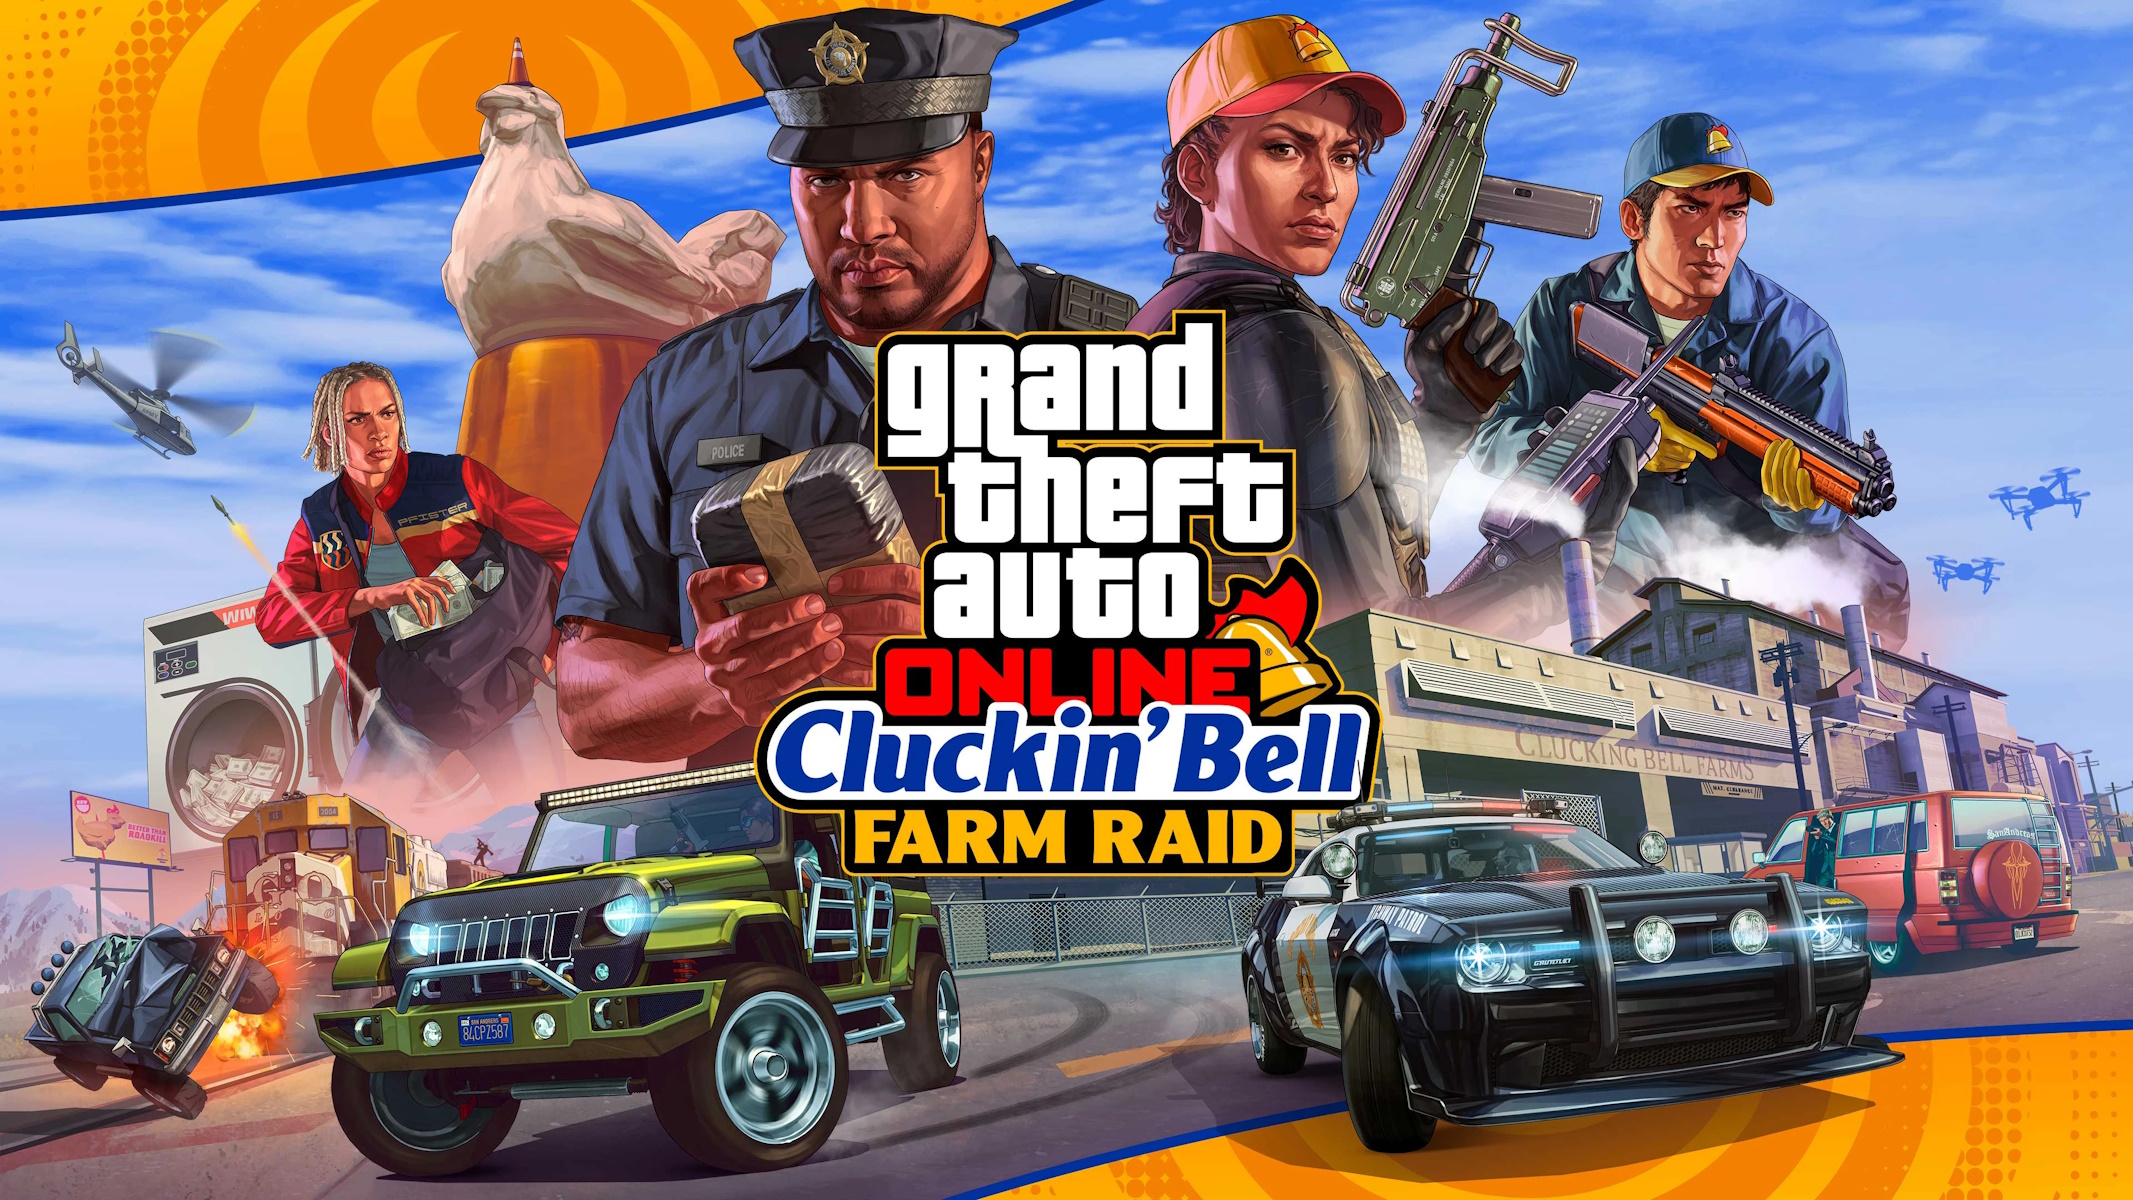 GTA Online The Cluckin’ Bell Farm Raid